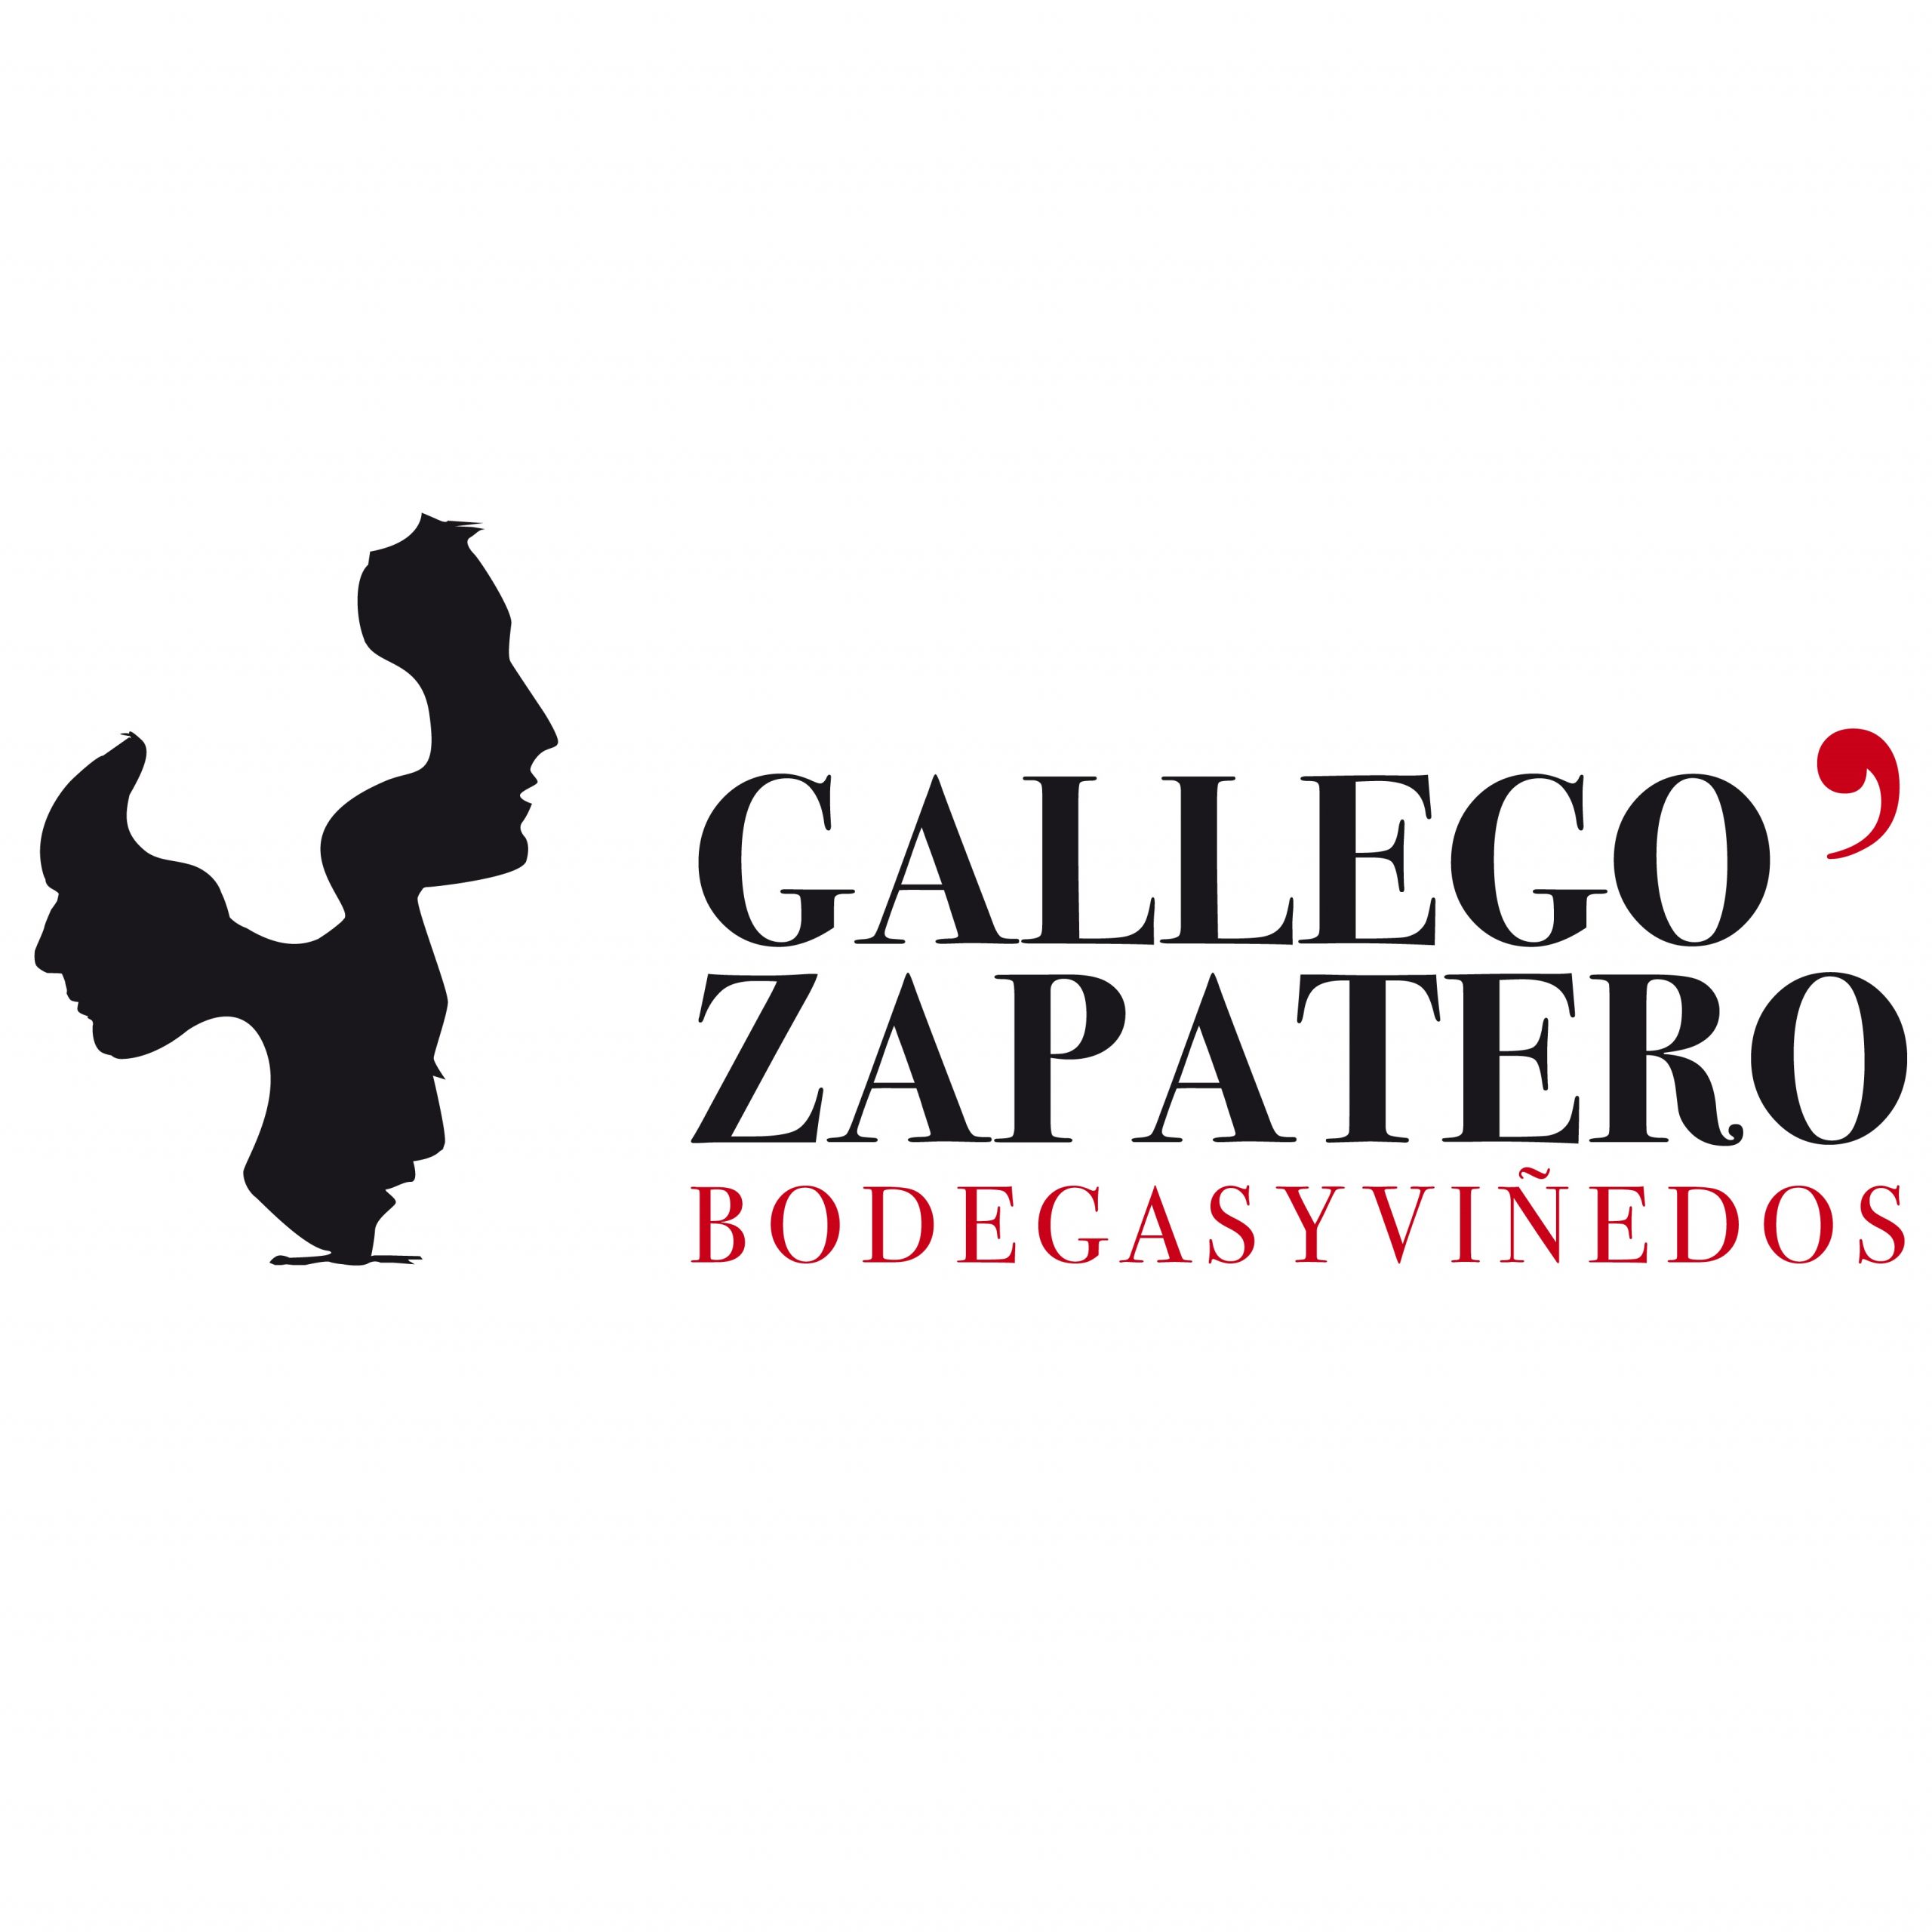 Bodegas y Viñedos Gallego Zapatero Logo